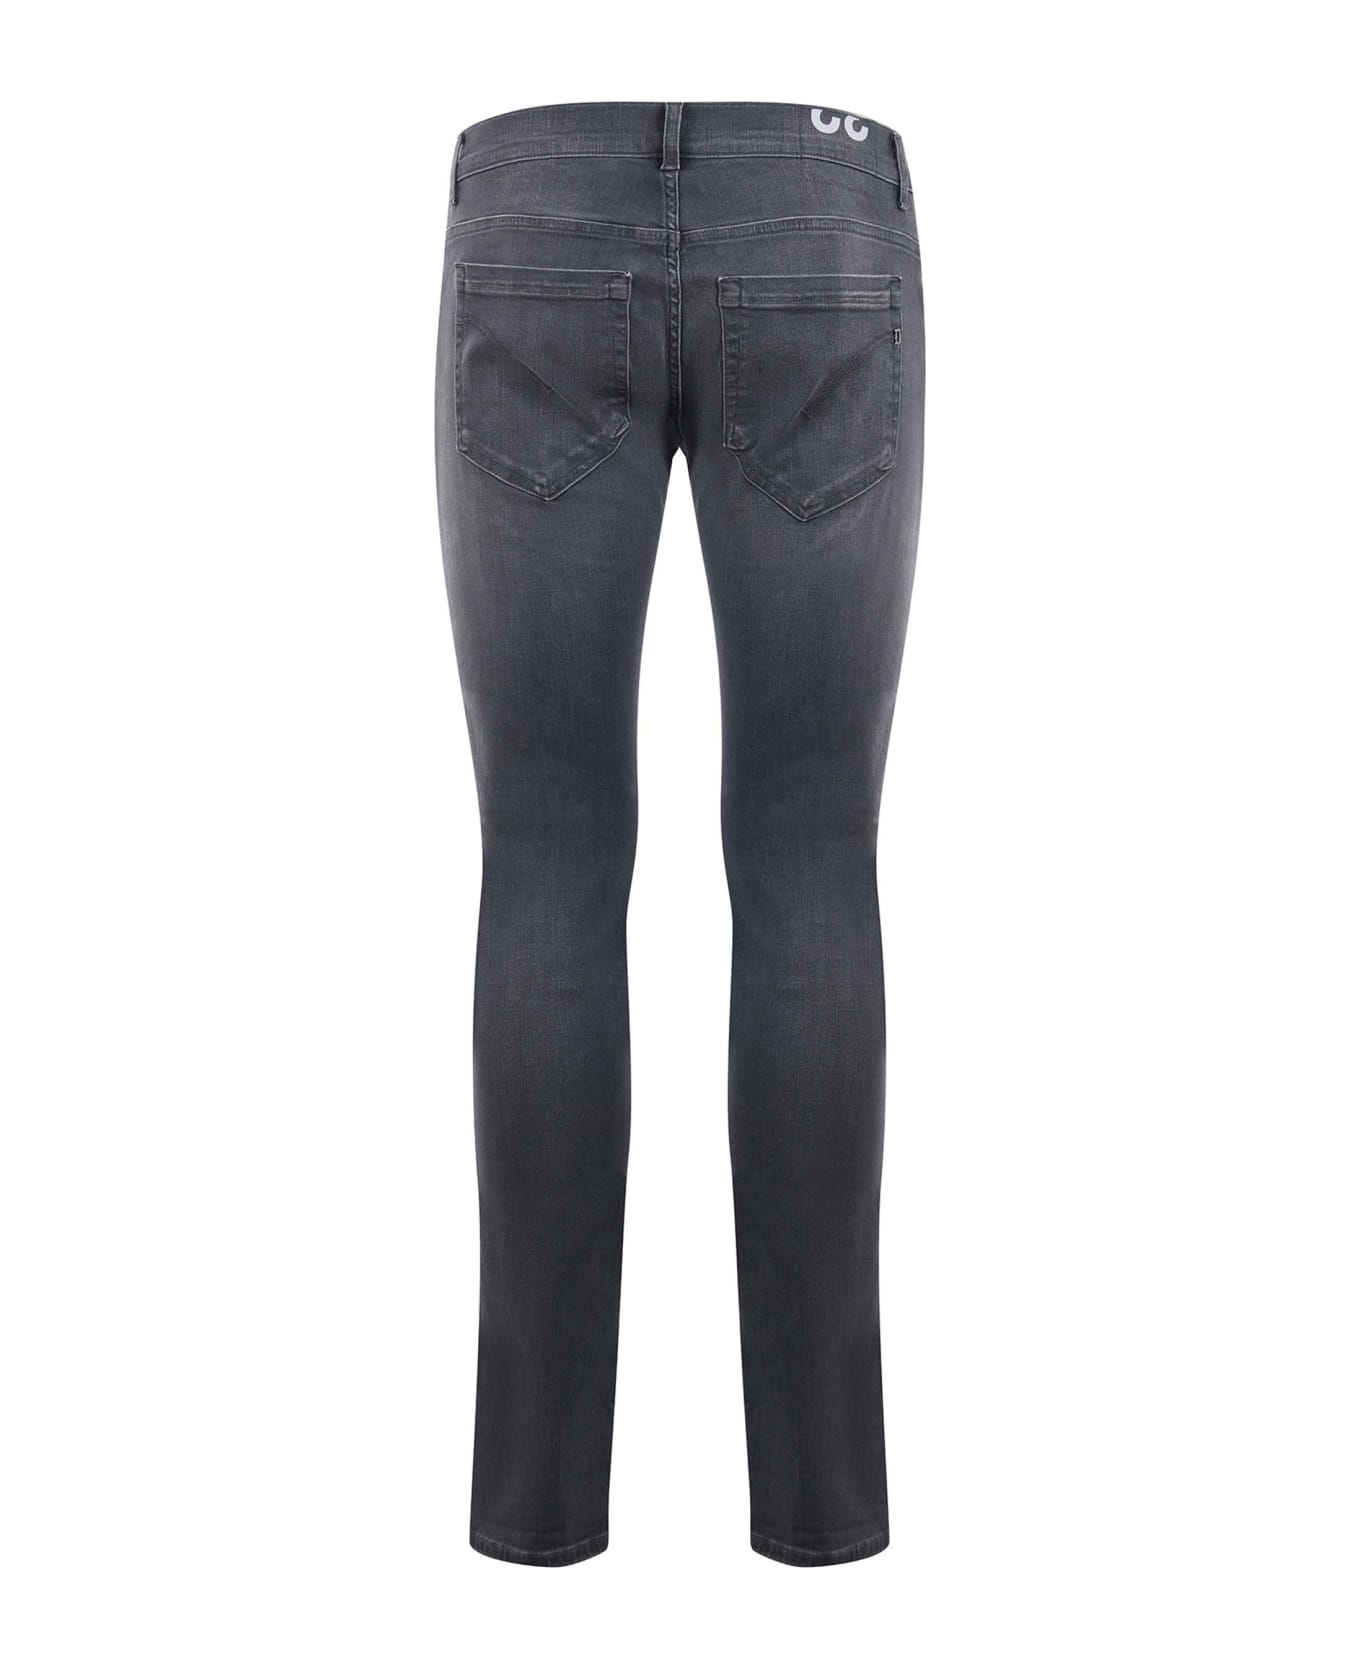 Dondup Pantalone George 5 Tasche Jeans - Denim grigio デニム